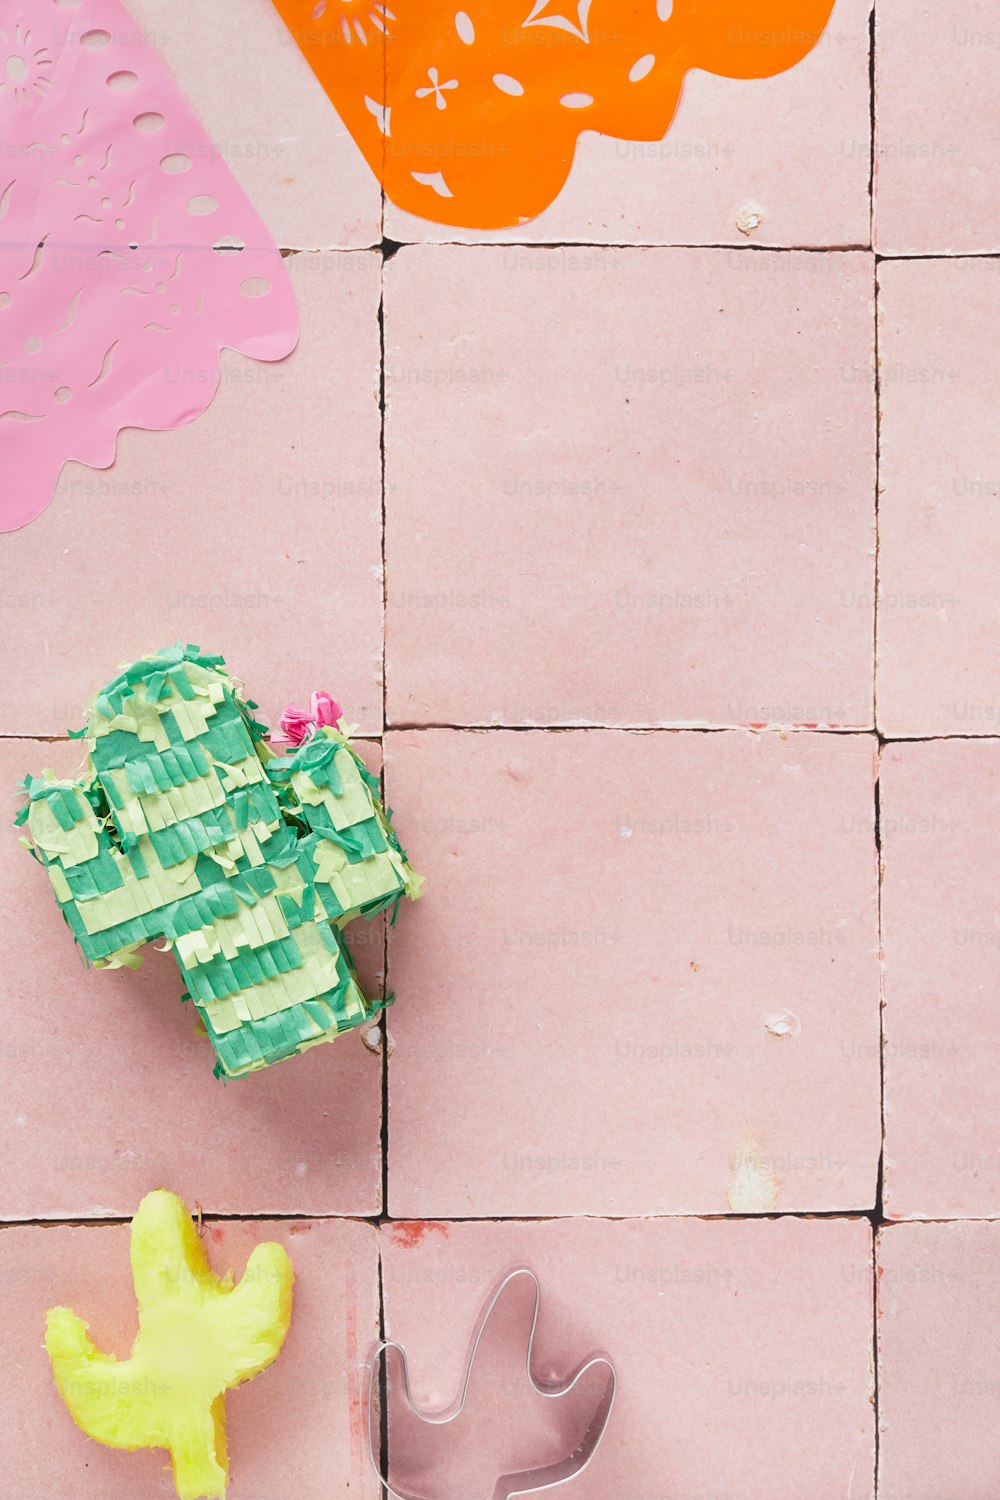 um piso de azulejos rosa com um cacto e um cortador de bolo